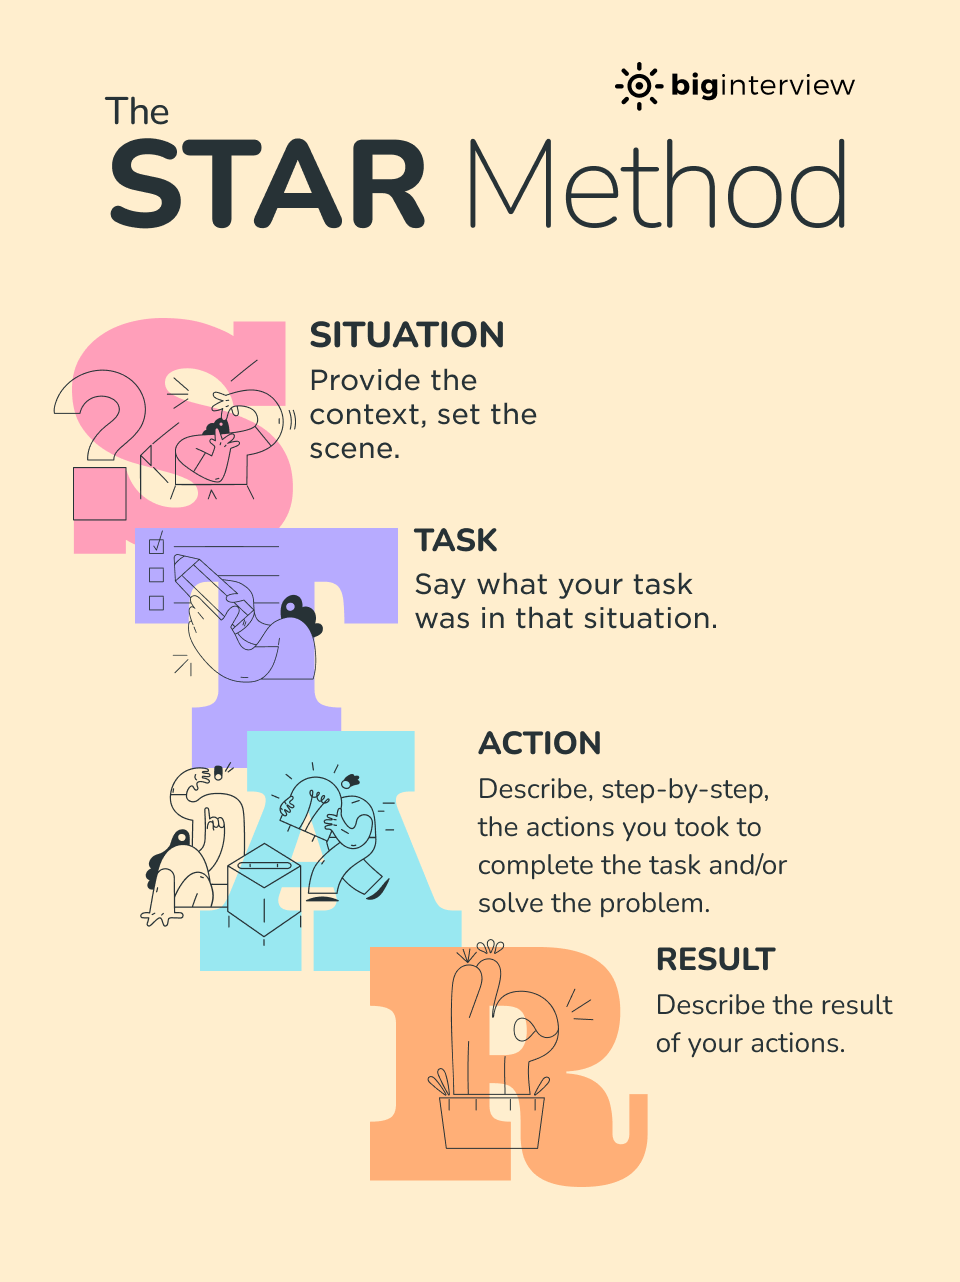 STAR Method breakdown